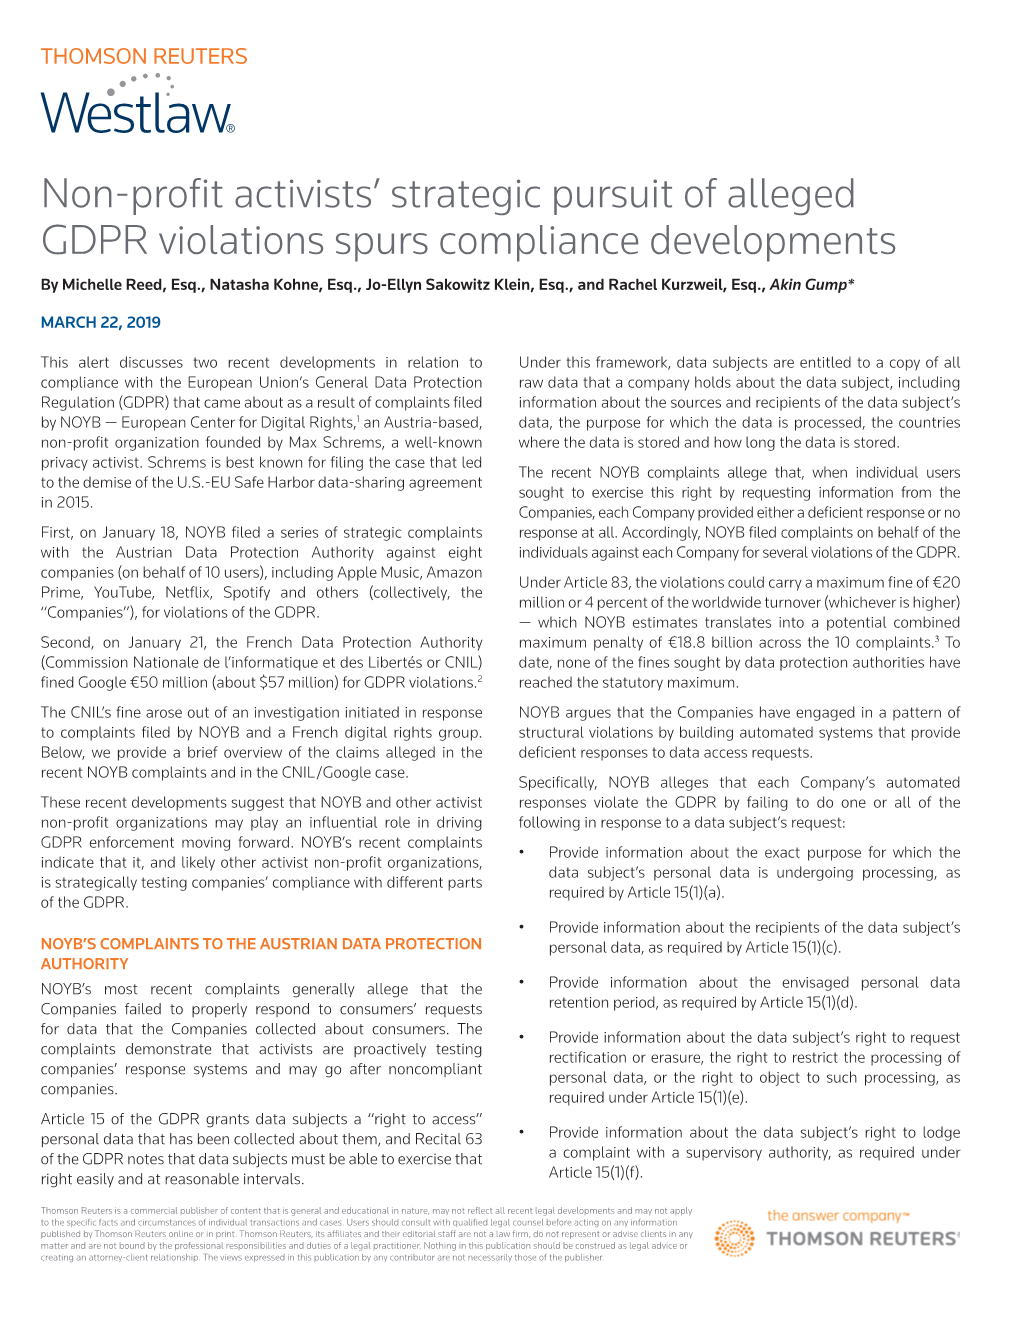 Non-Profit Activists' Strategic Pursuit of Alleged GDPR Violations Spurs